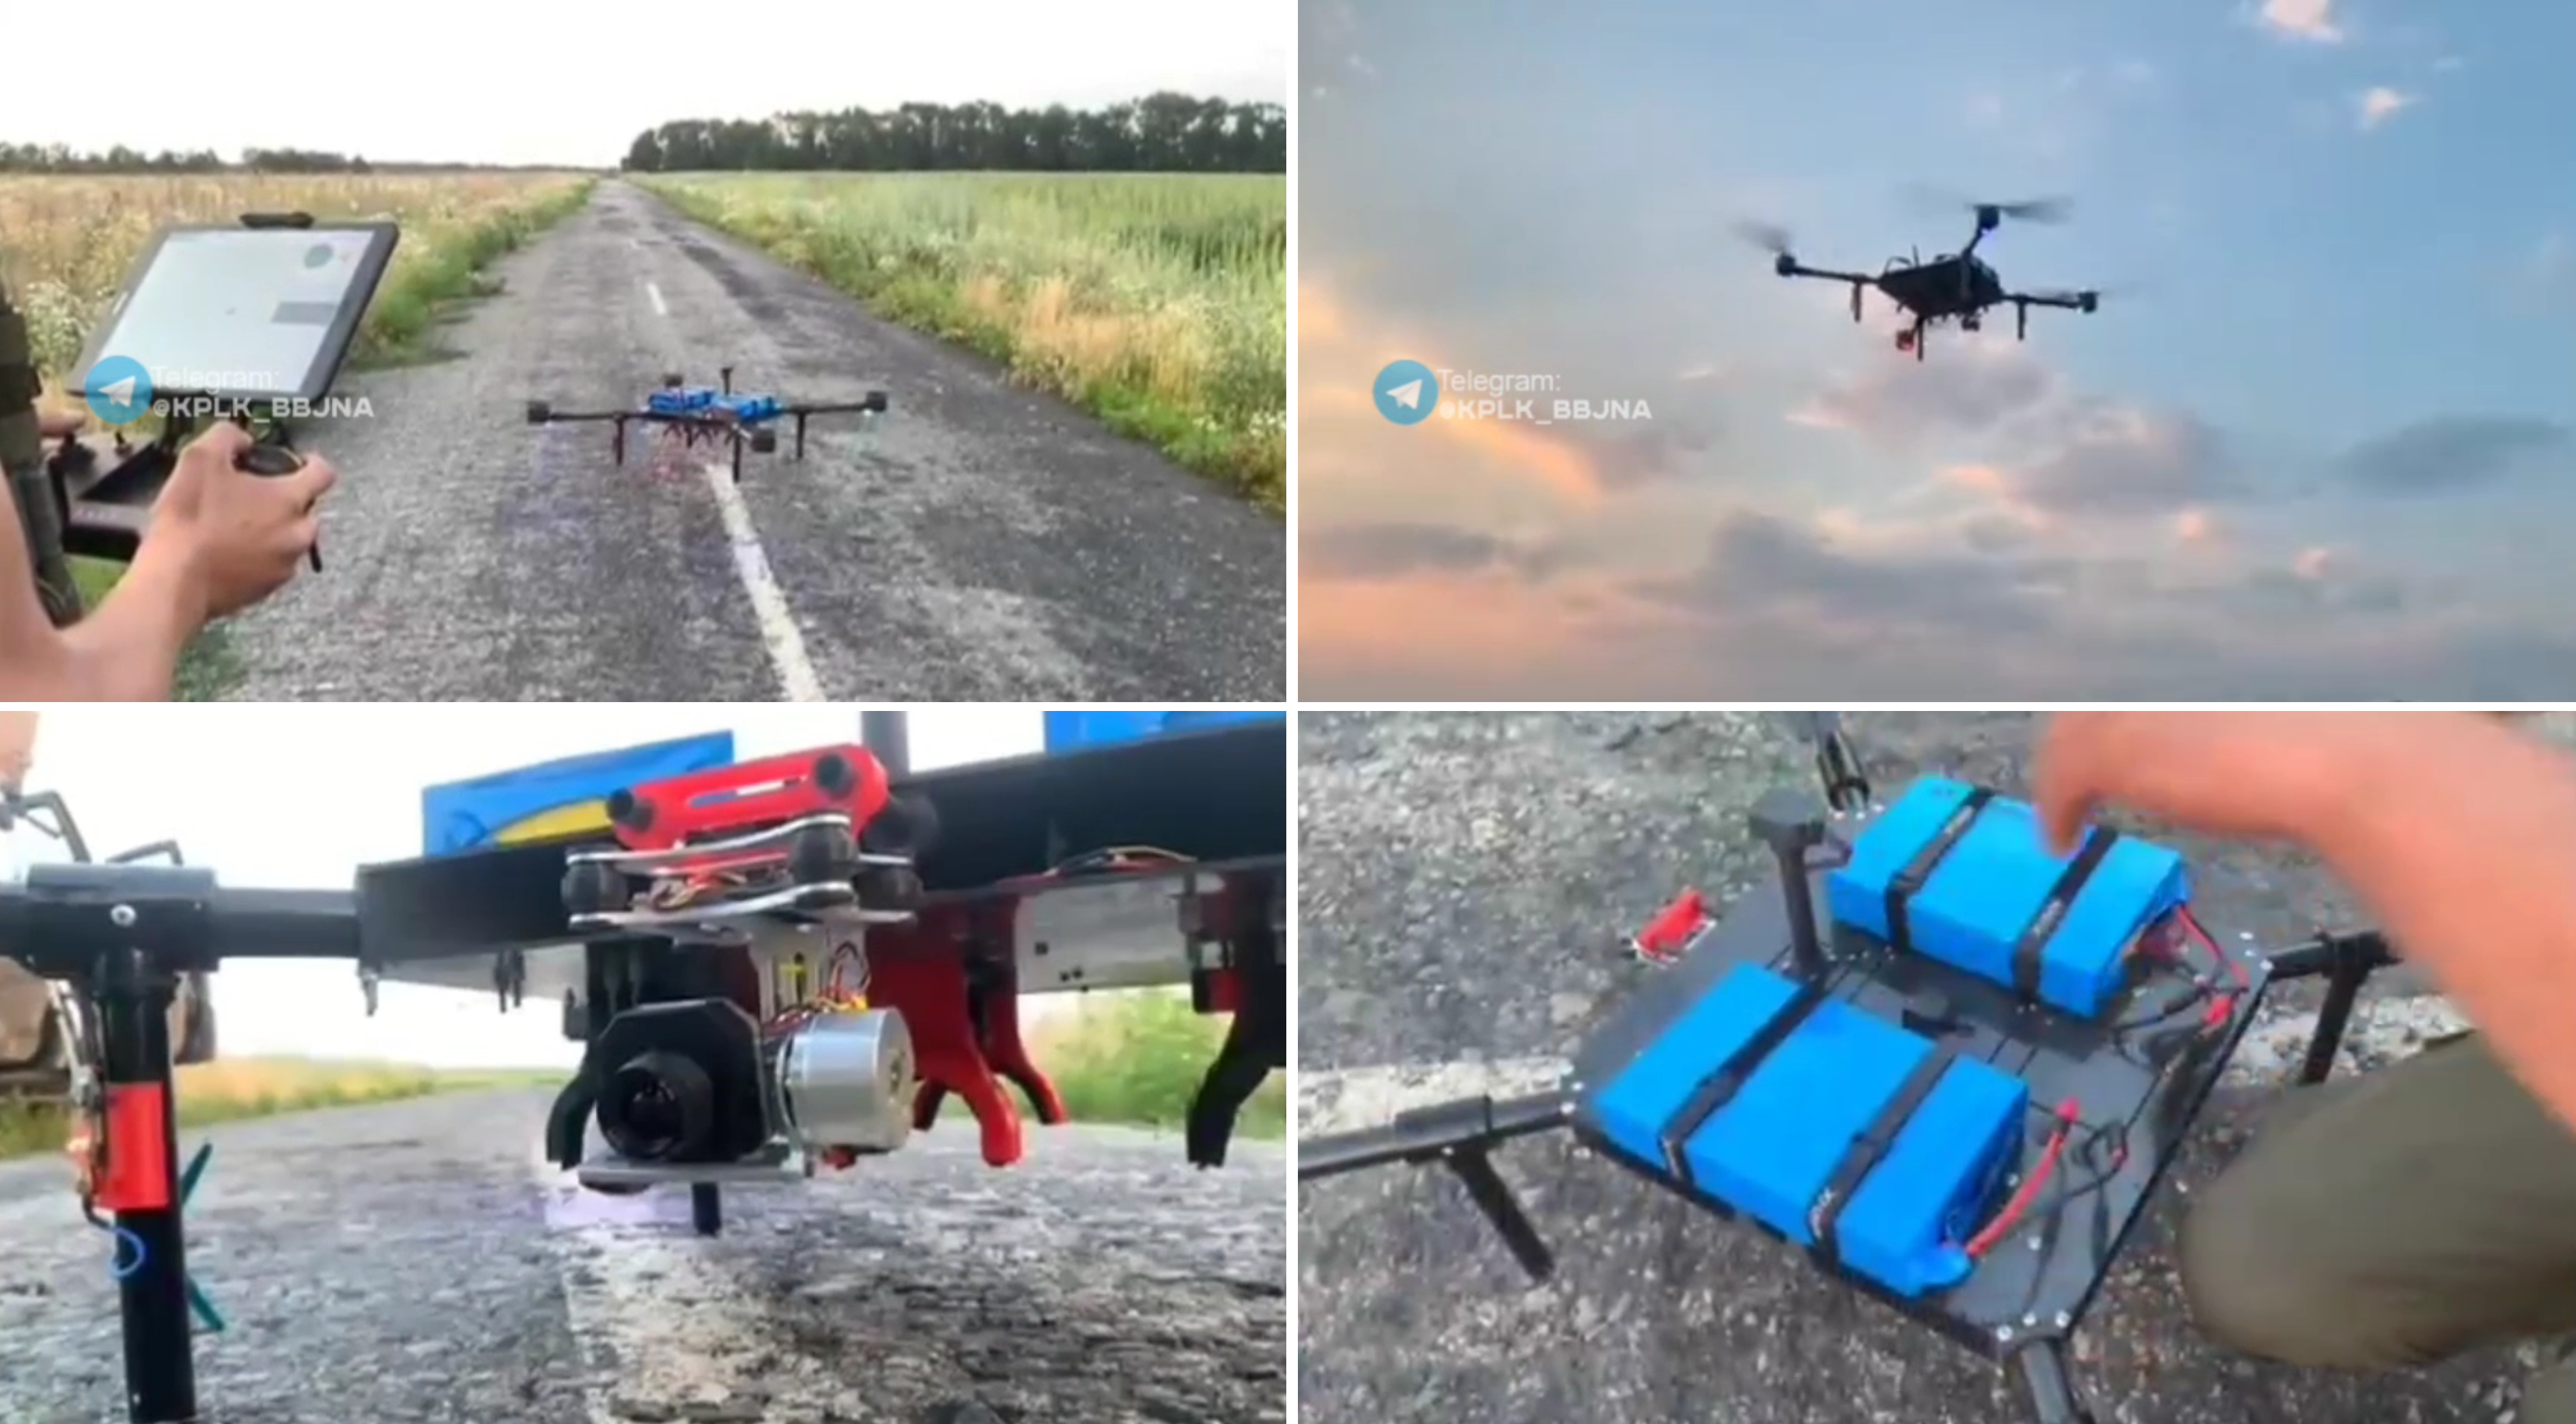 Ukrainische Enthusiasten haben eine große Drohne gebaut, die drei 82-mm-Minen tragen kann (Video)